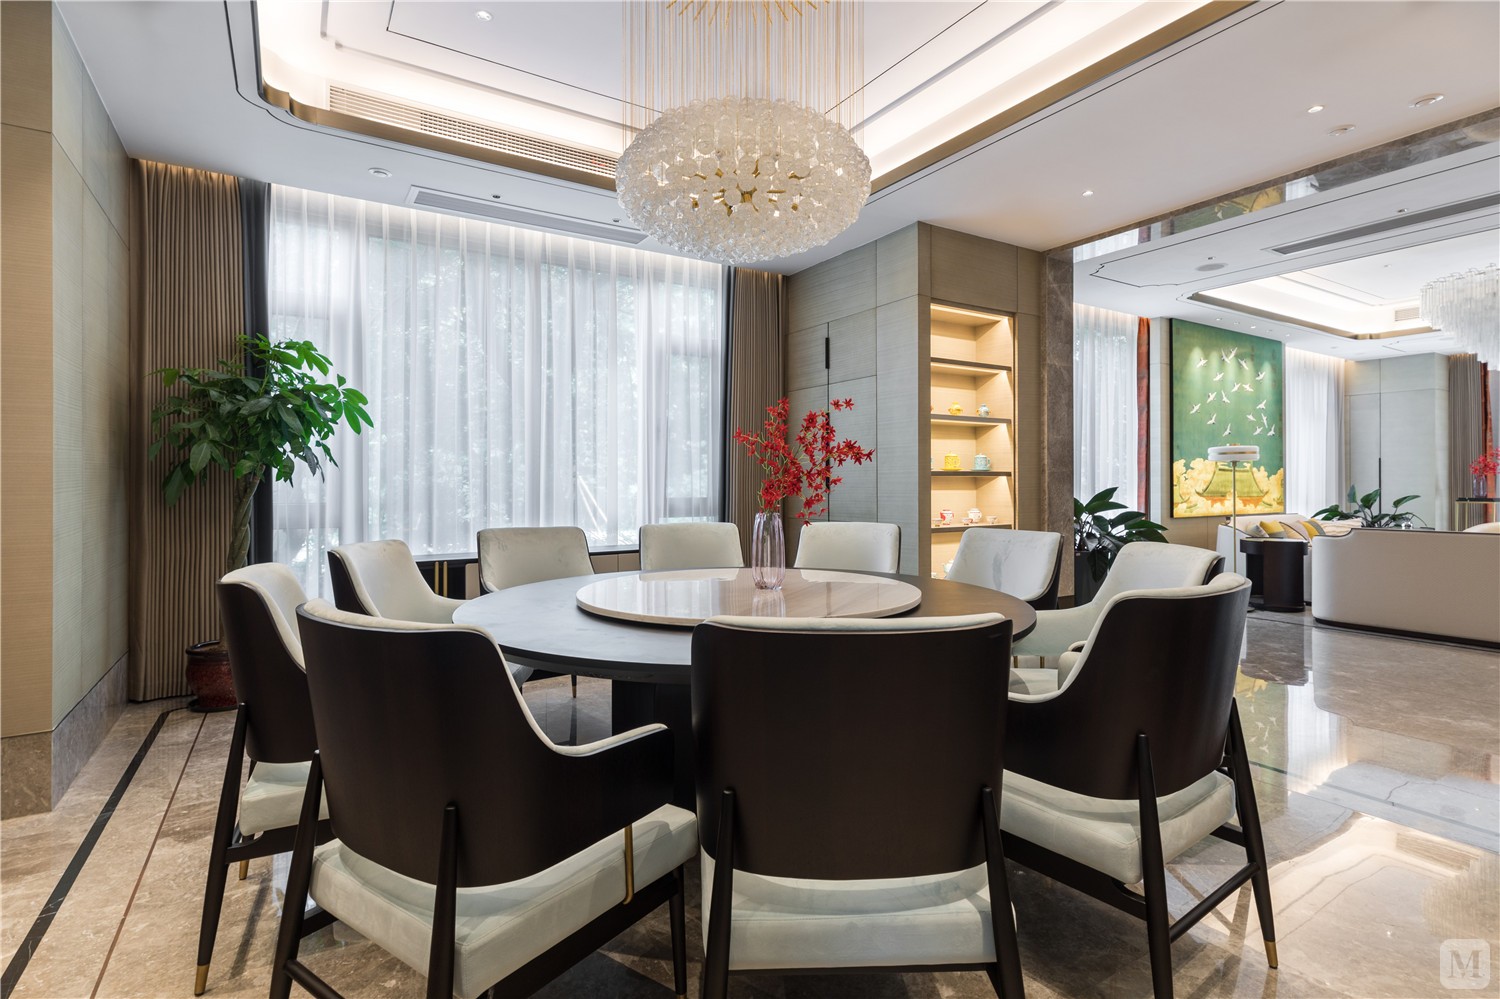 黑色的餐桌，配以白色餐椅，精致、华丽、有章法，是对品质生活的理解和尊重。写意的背景墙，有中式传统美学的风骨，给餐厅空间注入耐人寻味的延伸感。